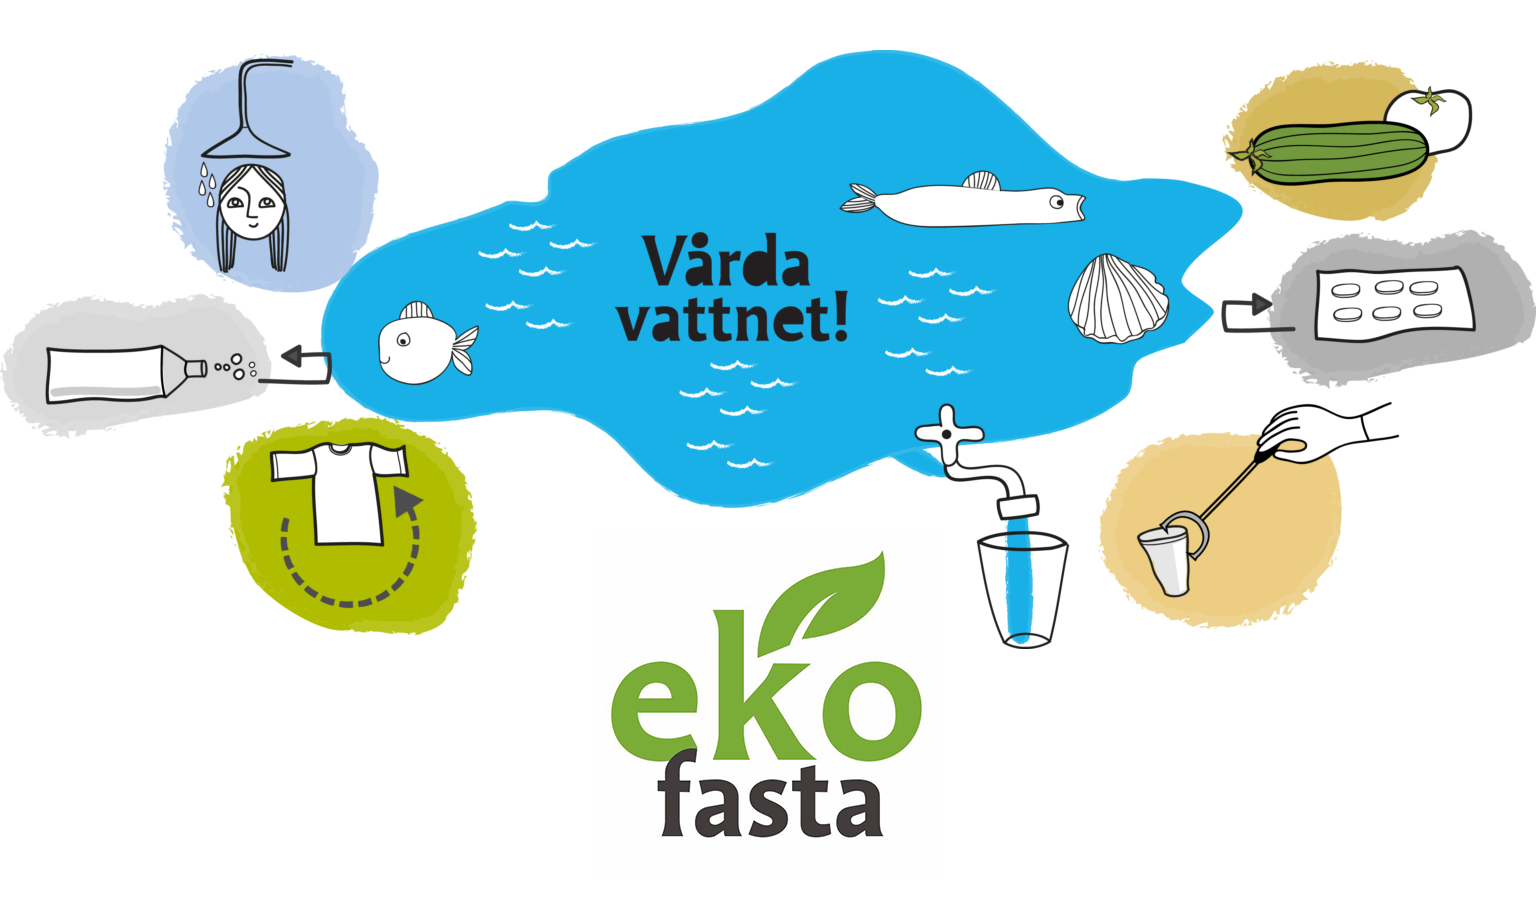 Illustration av vatten i olka former såsom sjö, dusch, nappflaska. Text: Vårda vatten. Ekofasta.